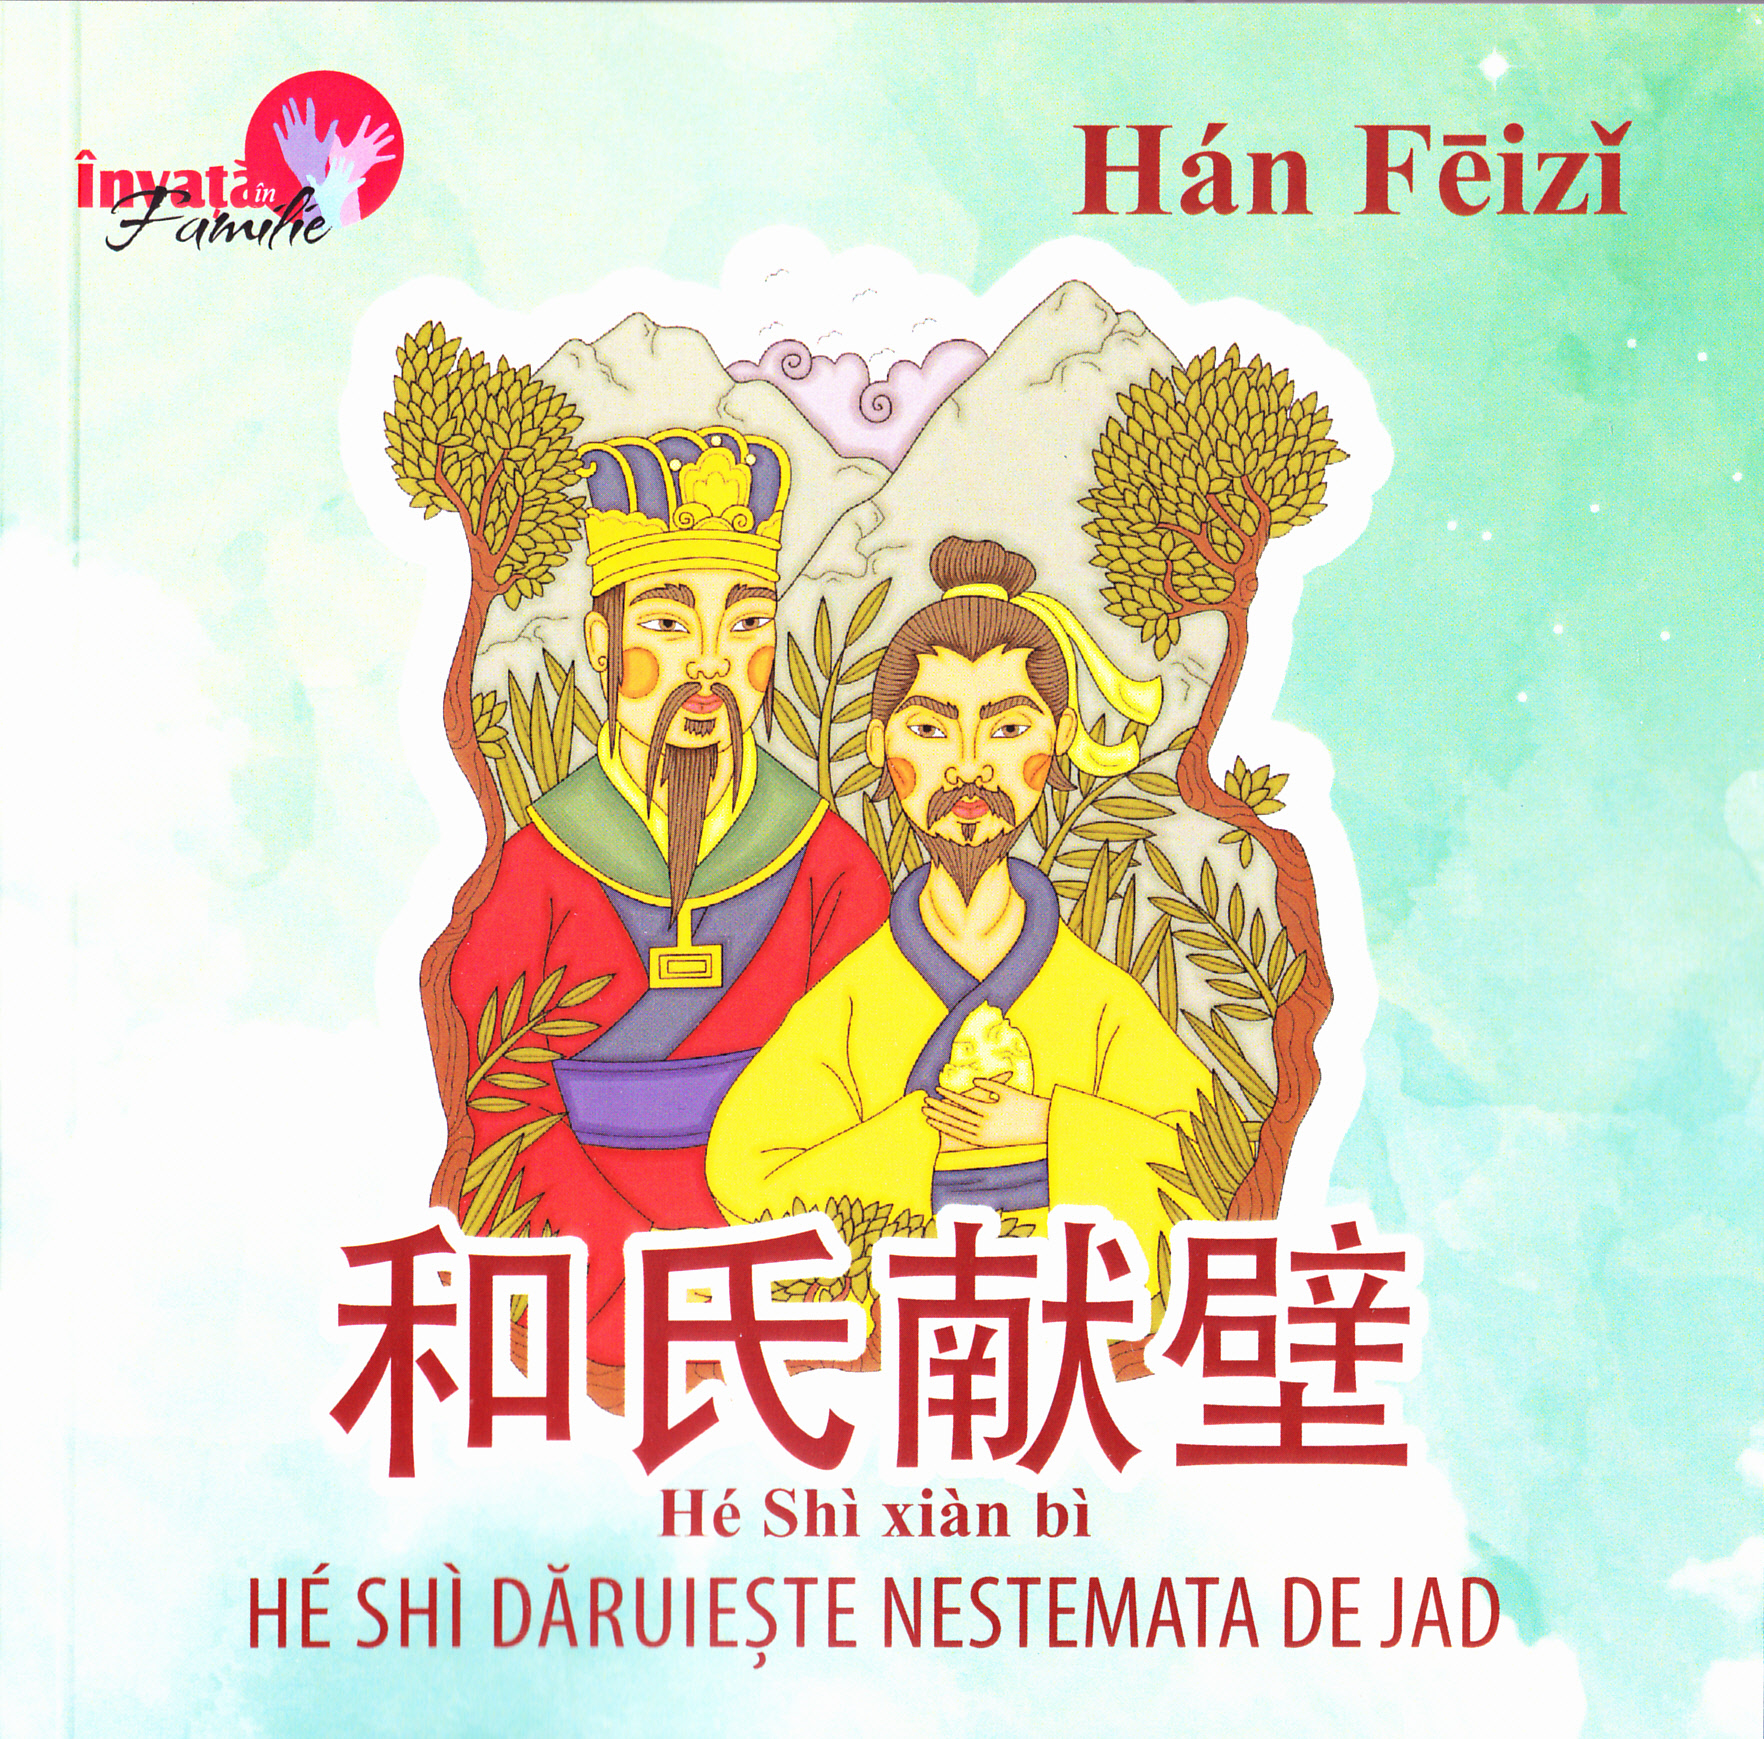 He Shi daruieste nestemata de jad - Han Feizi